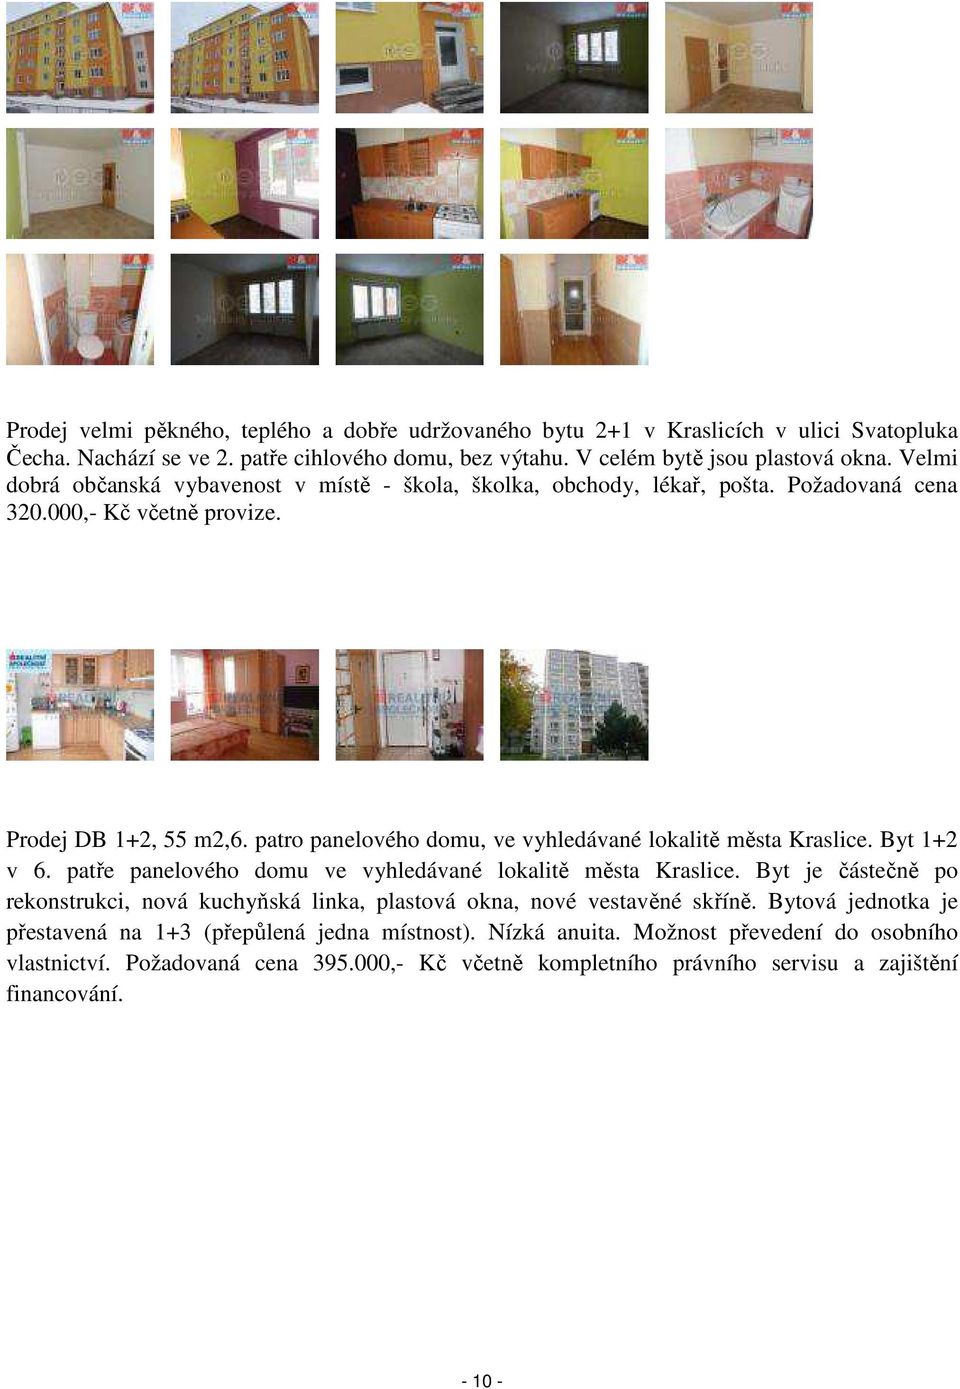 patro panelového domu, ve vyhledávané lokalitě města Kraslice. Byt 1+2 v 6. patře panelového domu ve vyhledávané lokalitě města Kraslice.